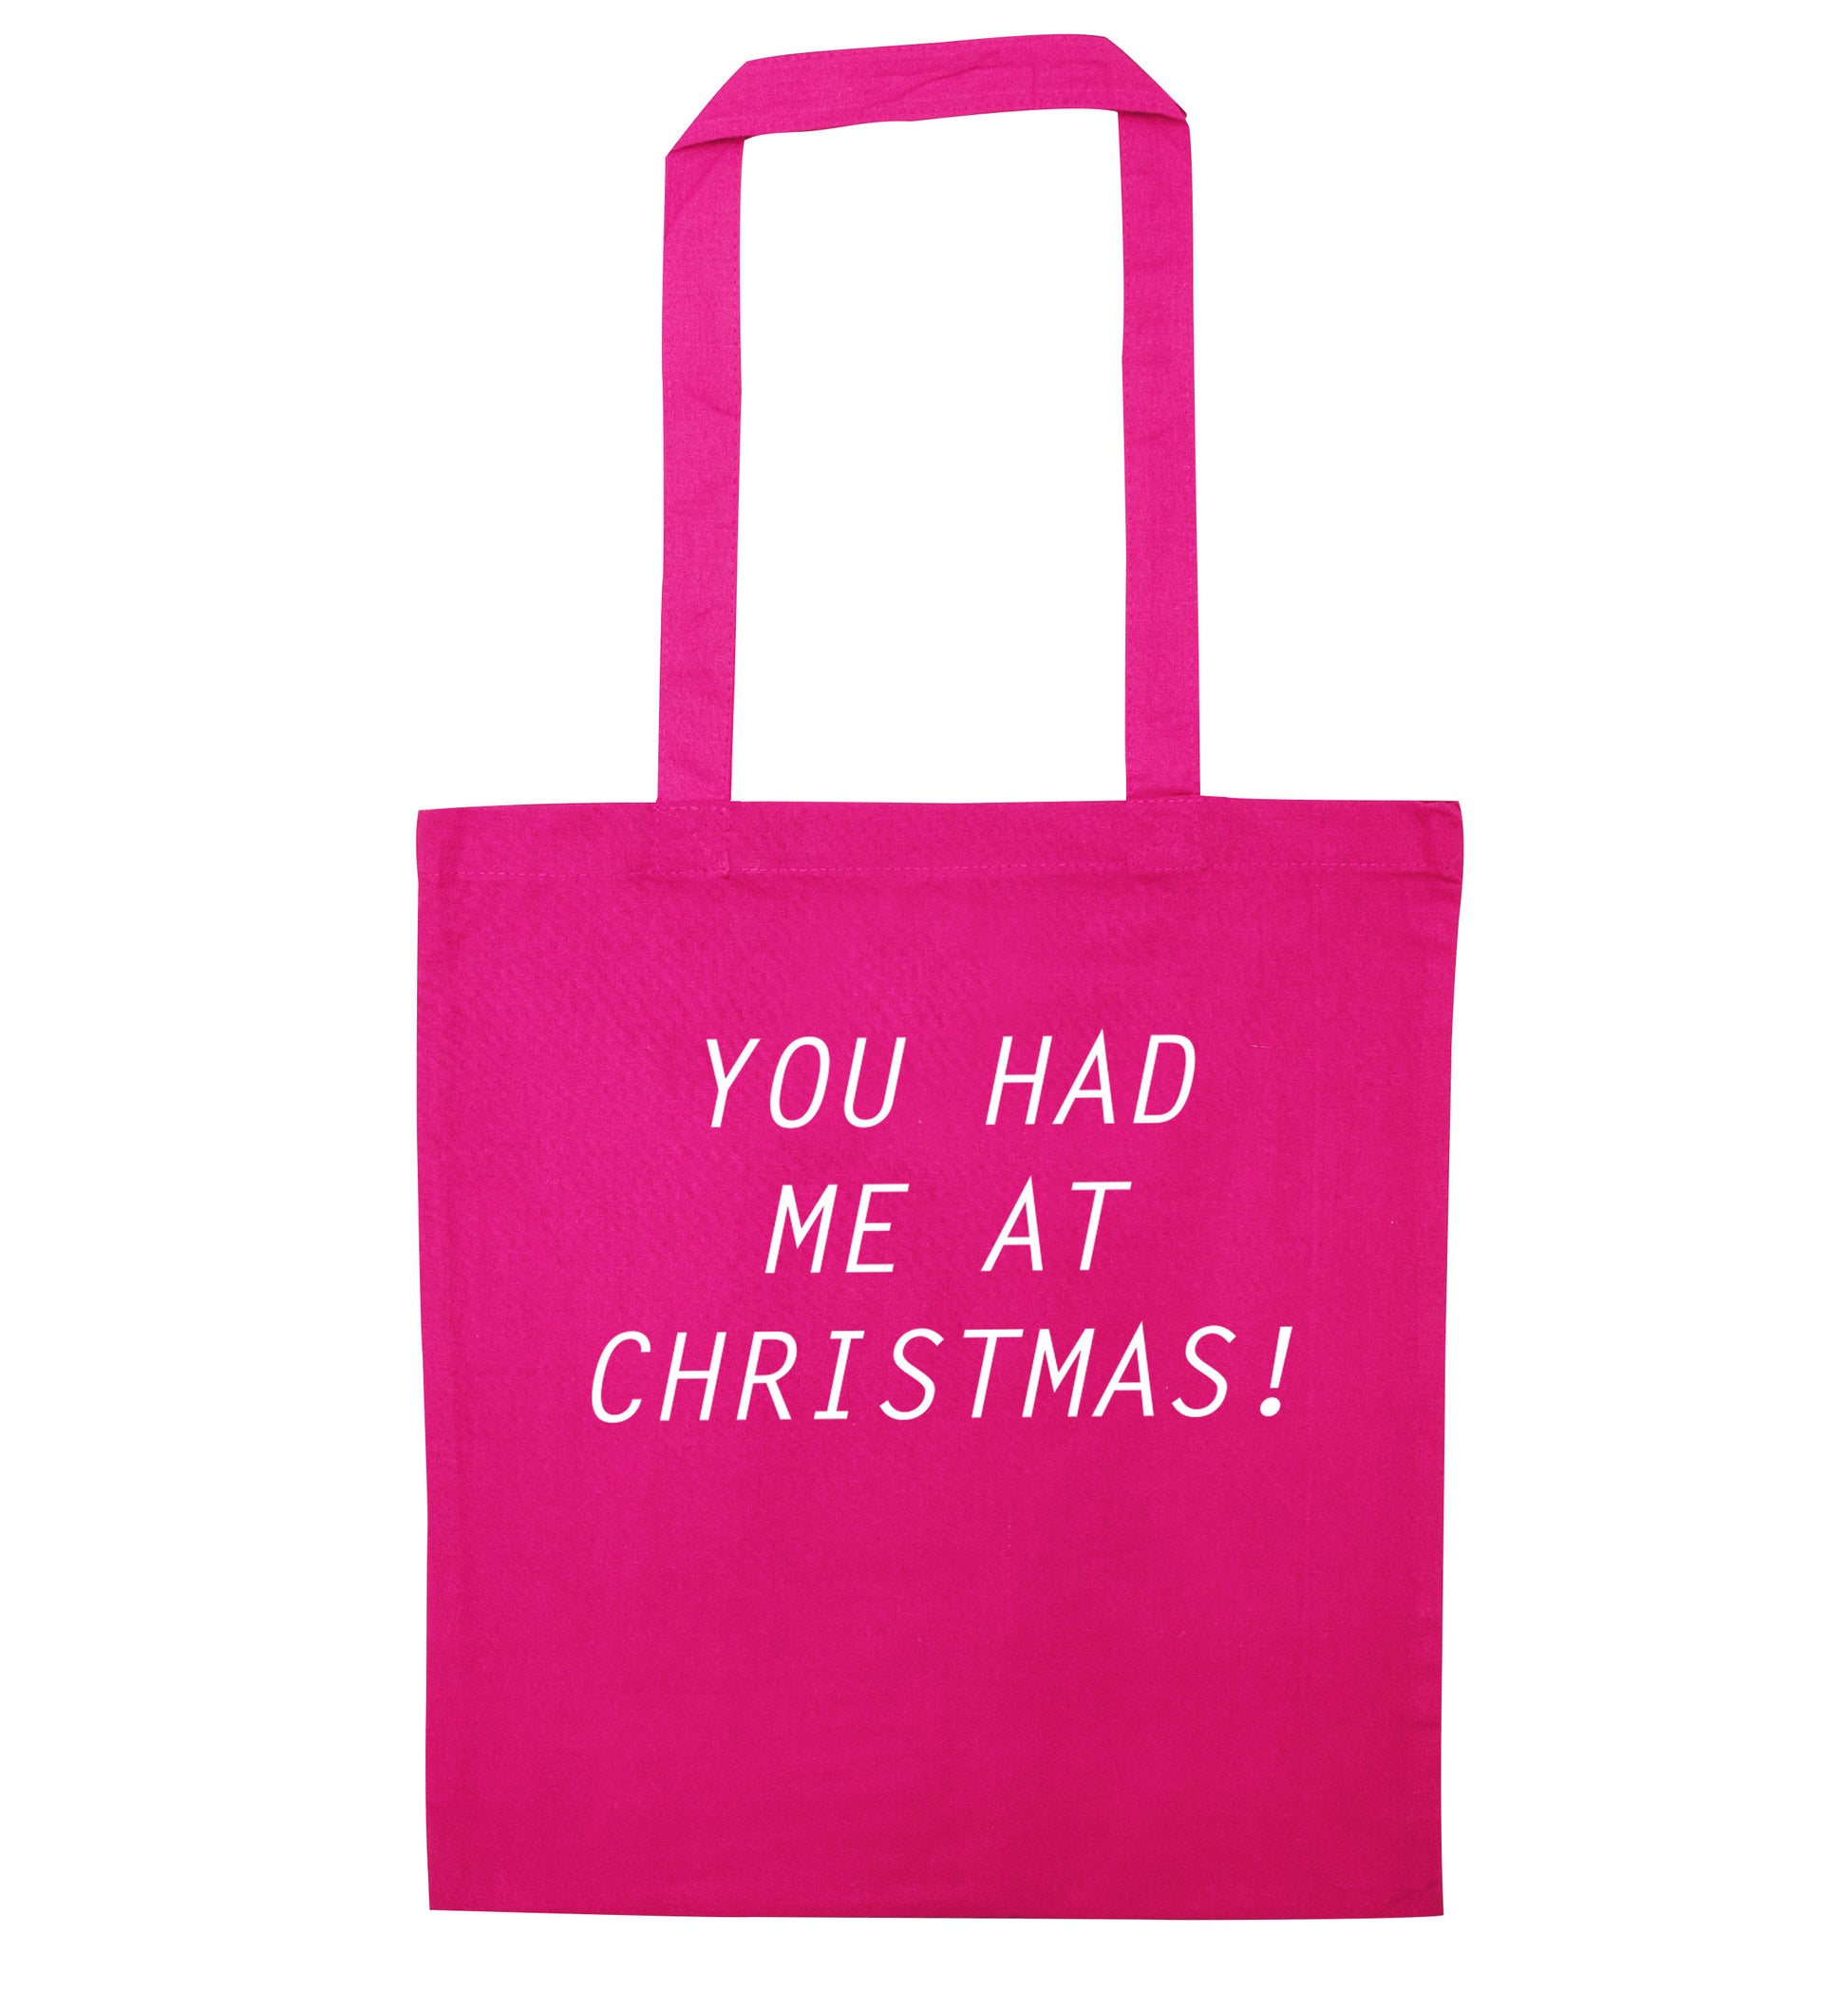 You had me at Christmas pink tote bag